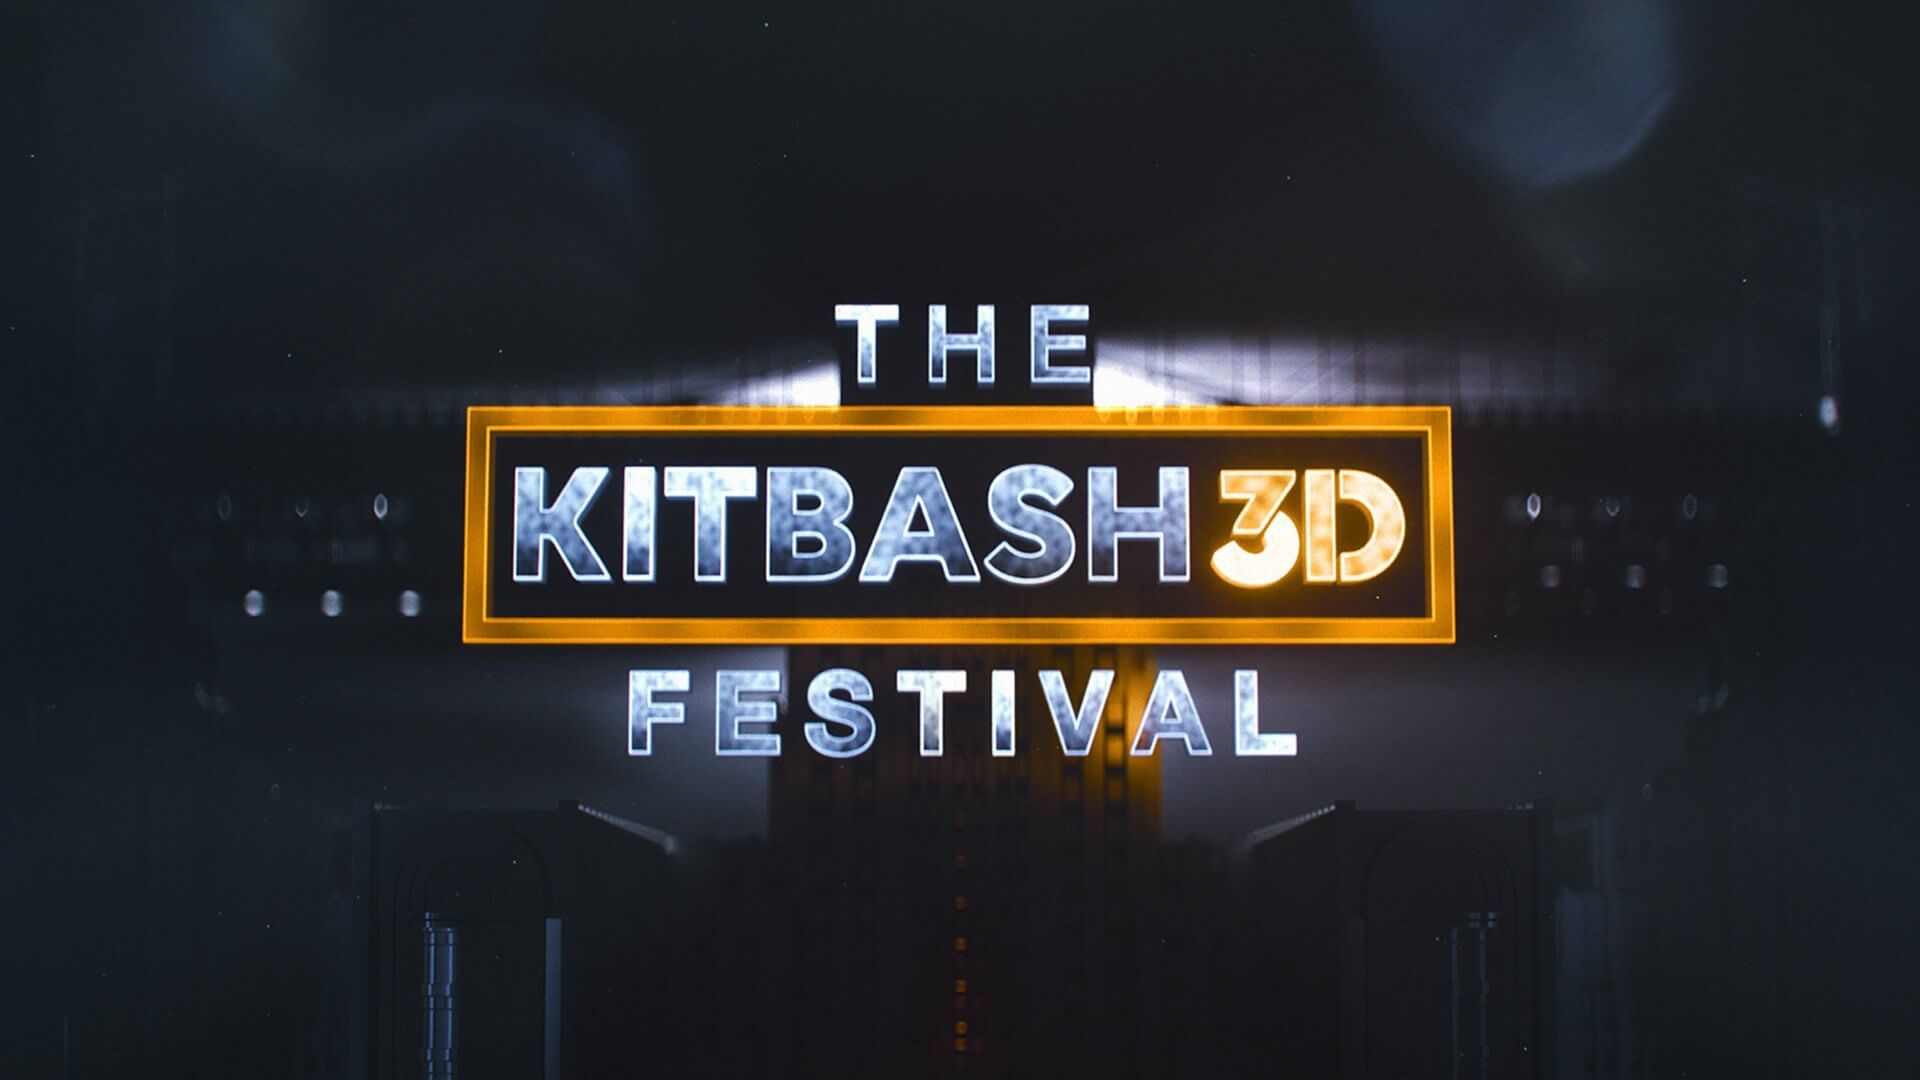 The KitBash3d Festival